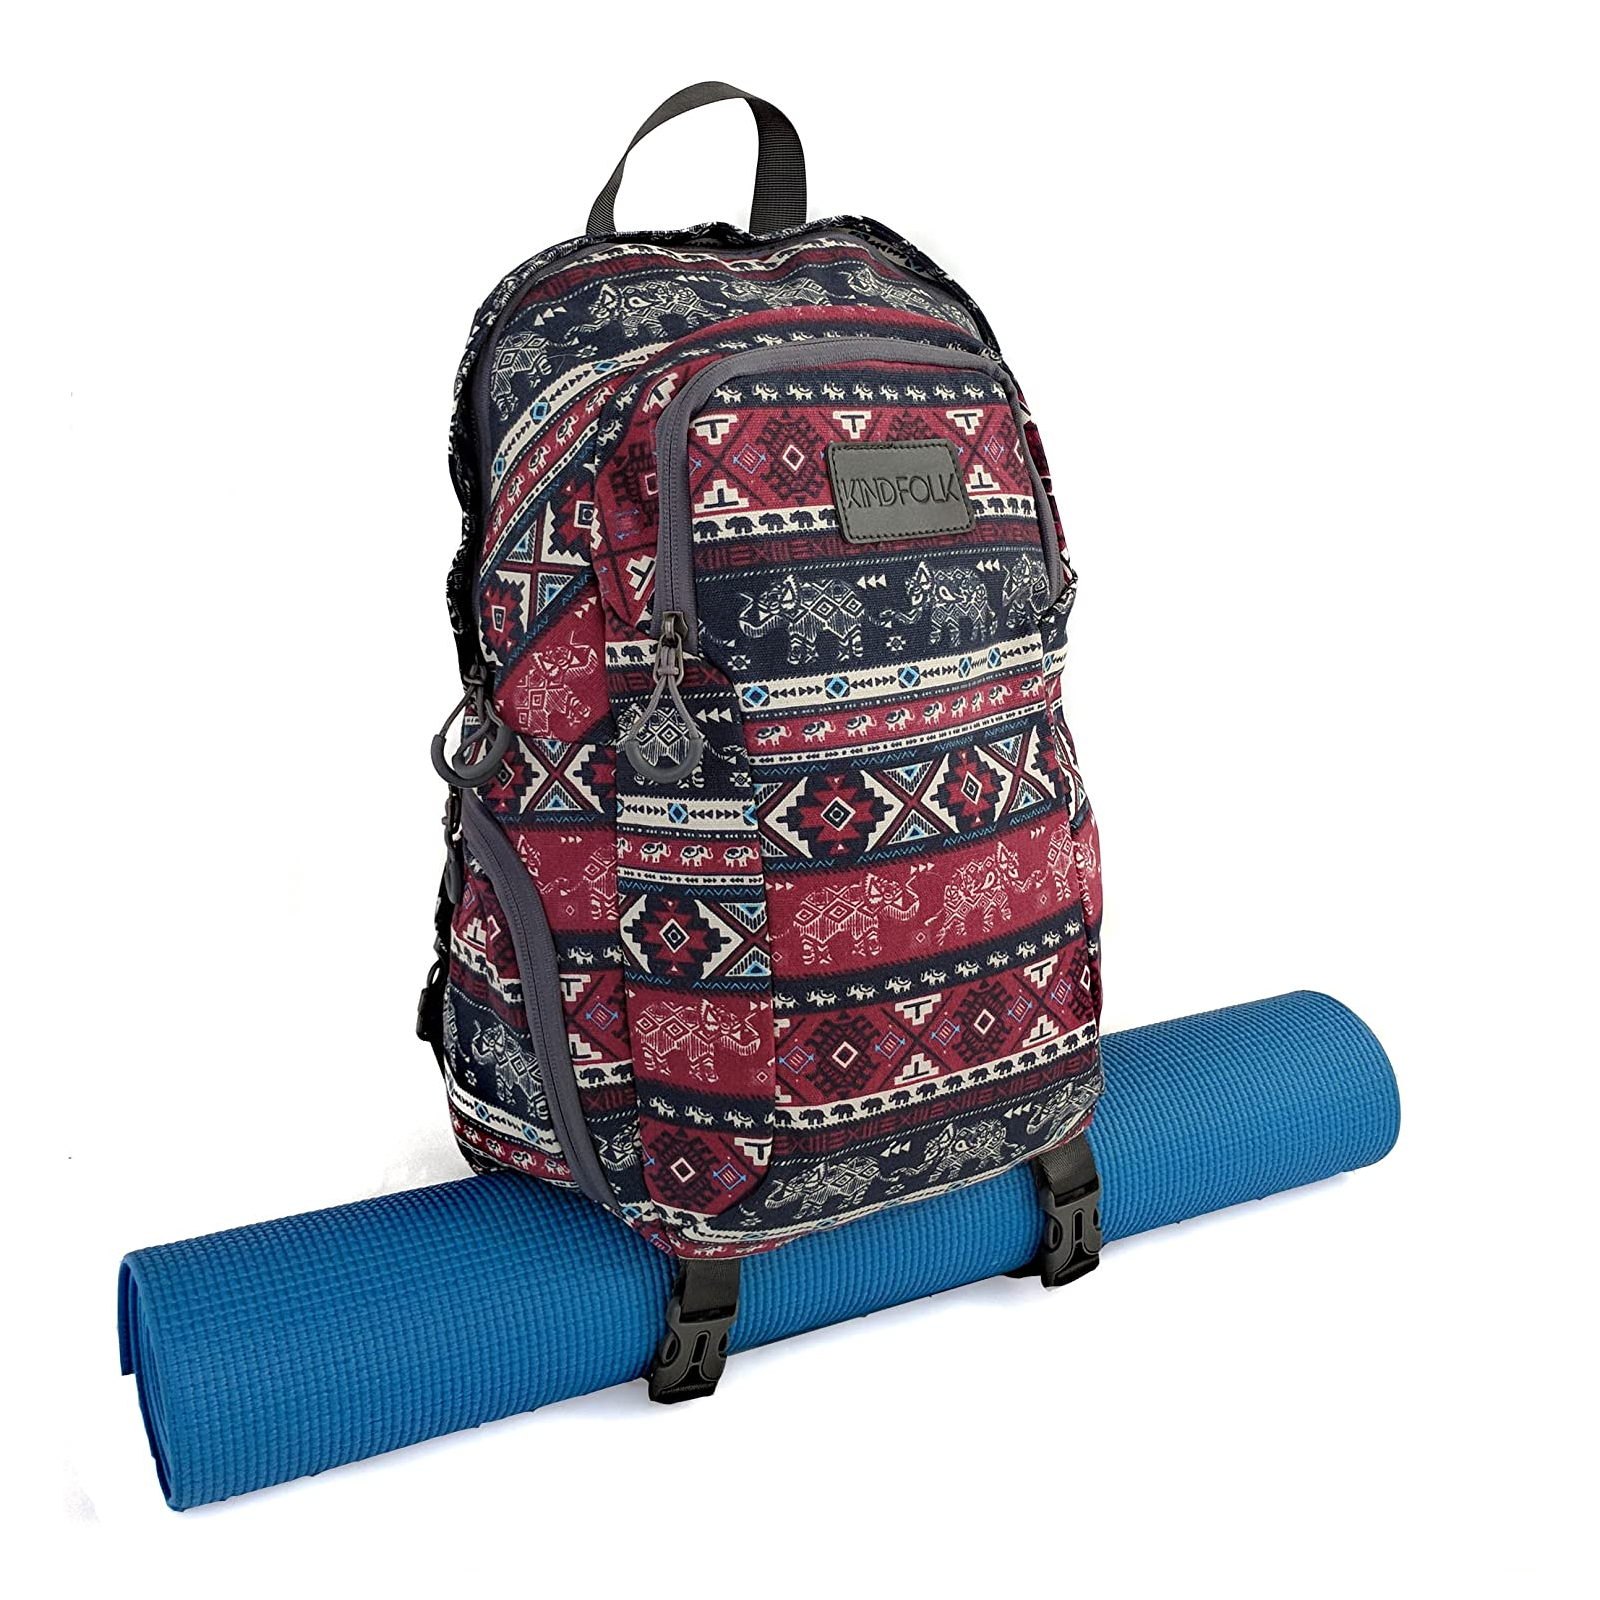 Kindfolk Yoga Mat Backpack Front View